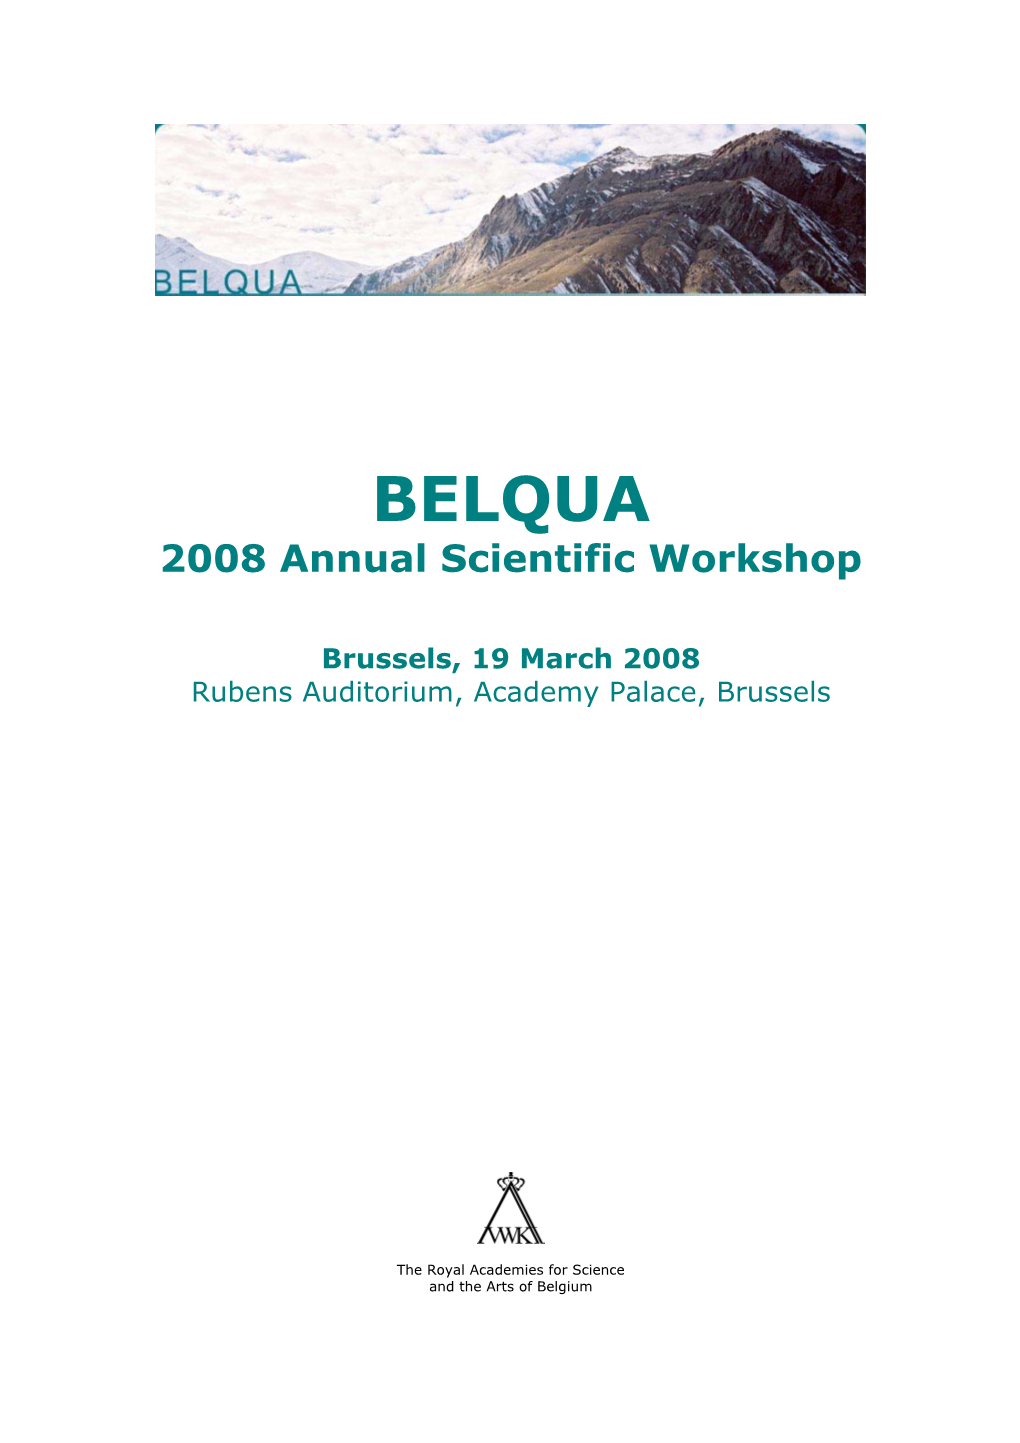 BELQUA 2008 Annual Scientific Workshop